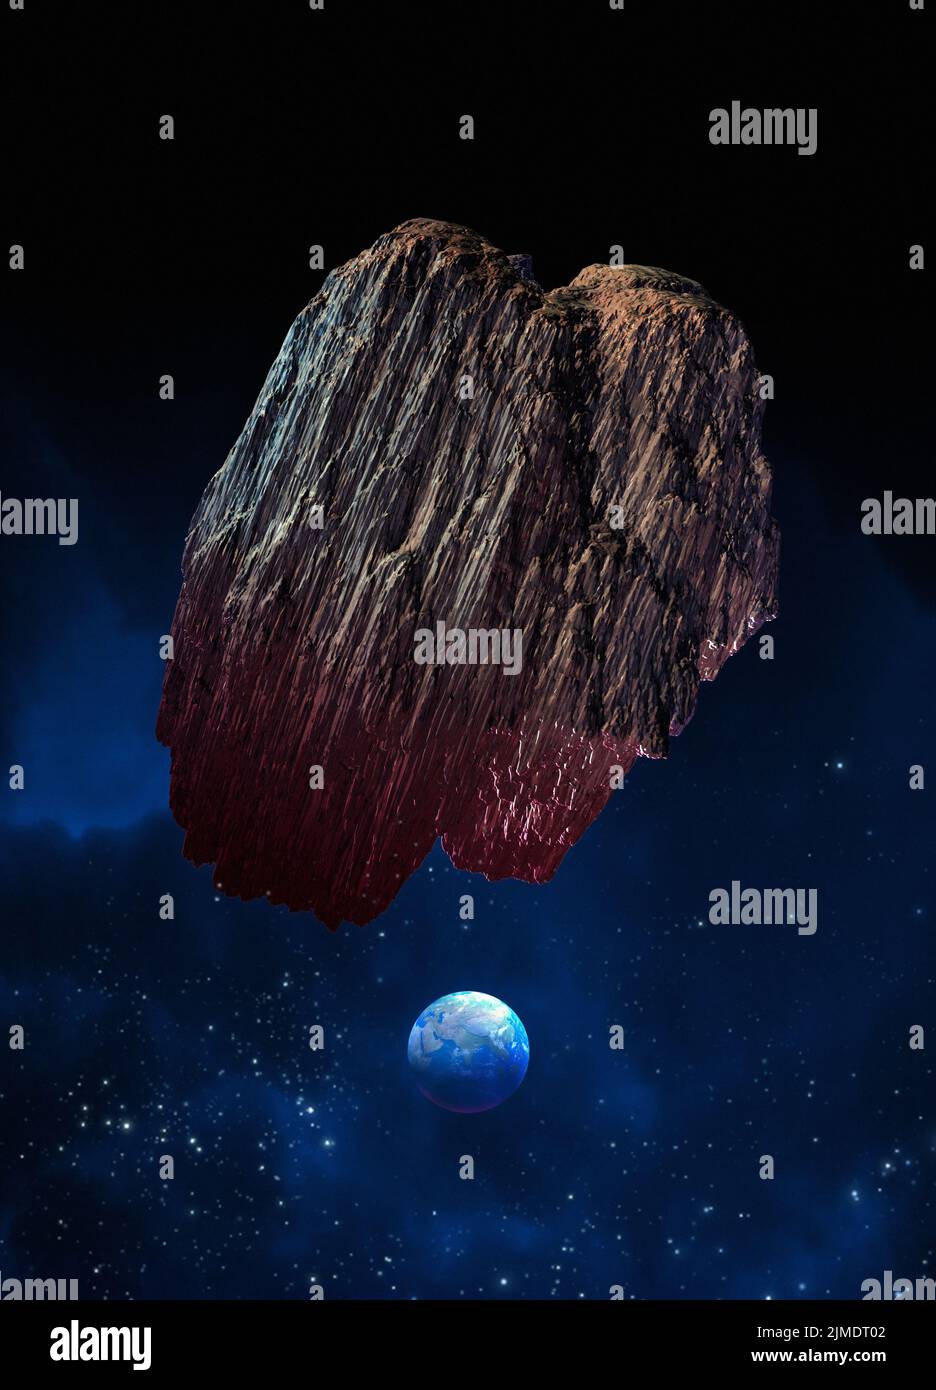 Asteroide grande que se dirige hacia la Tierra, ilustración Foto de stock